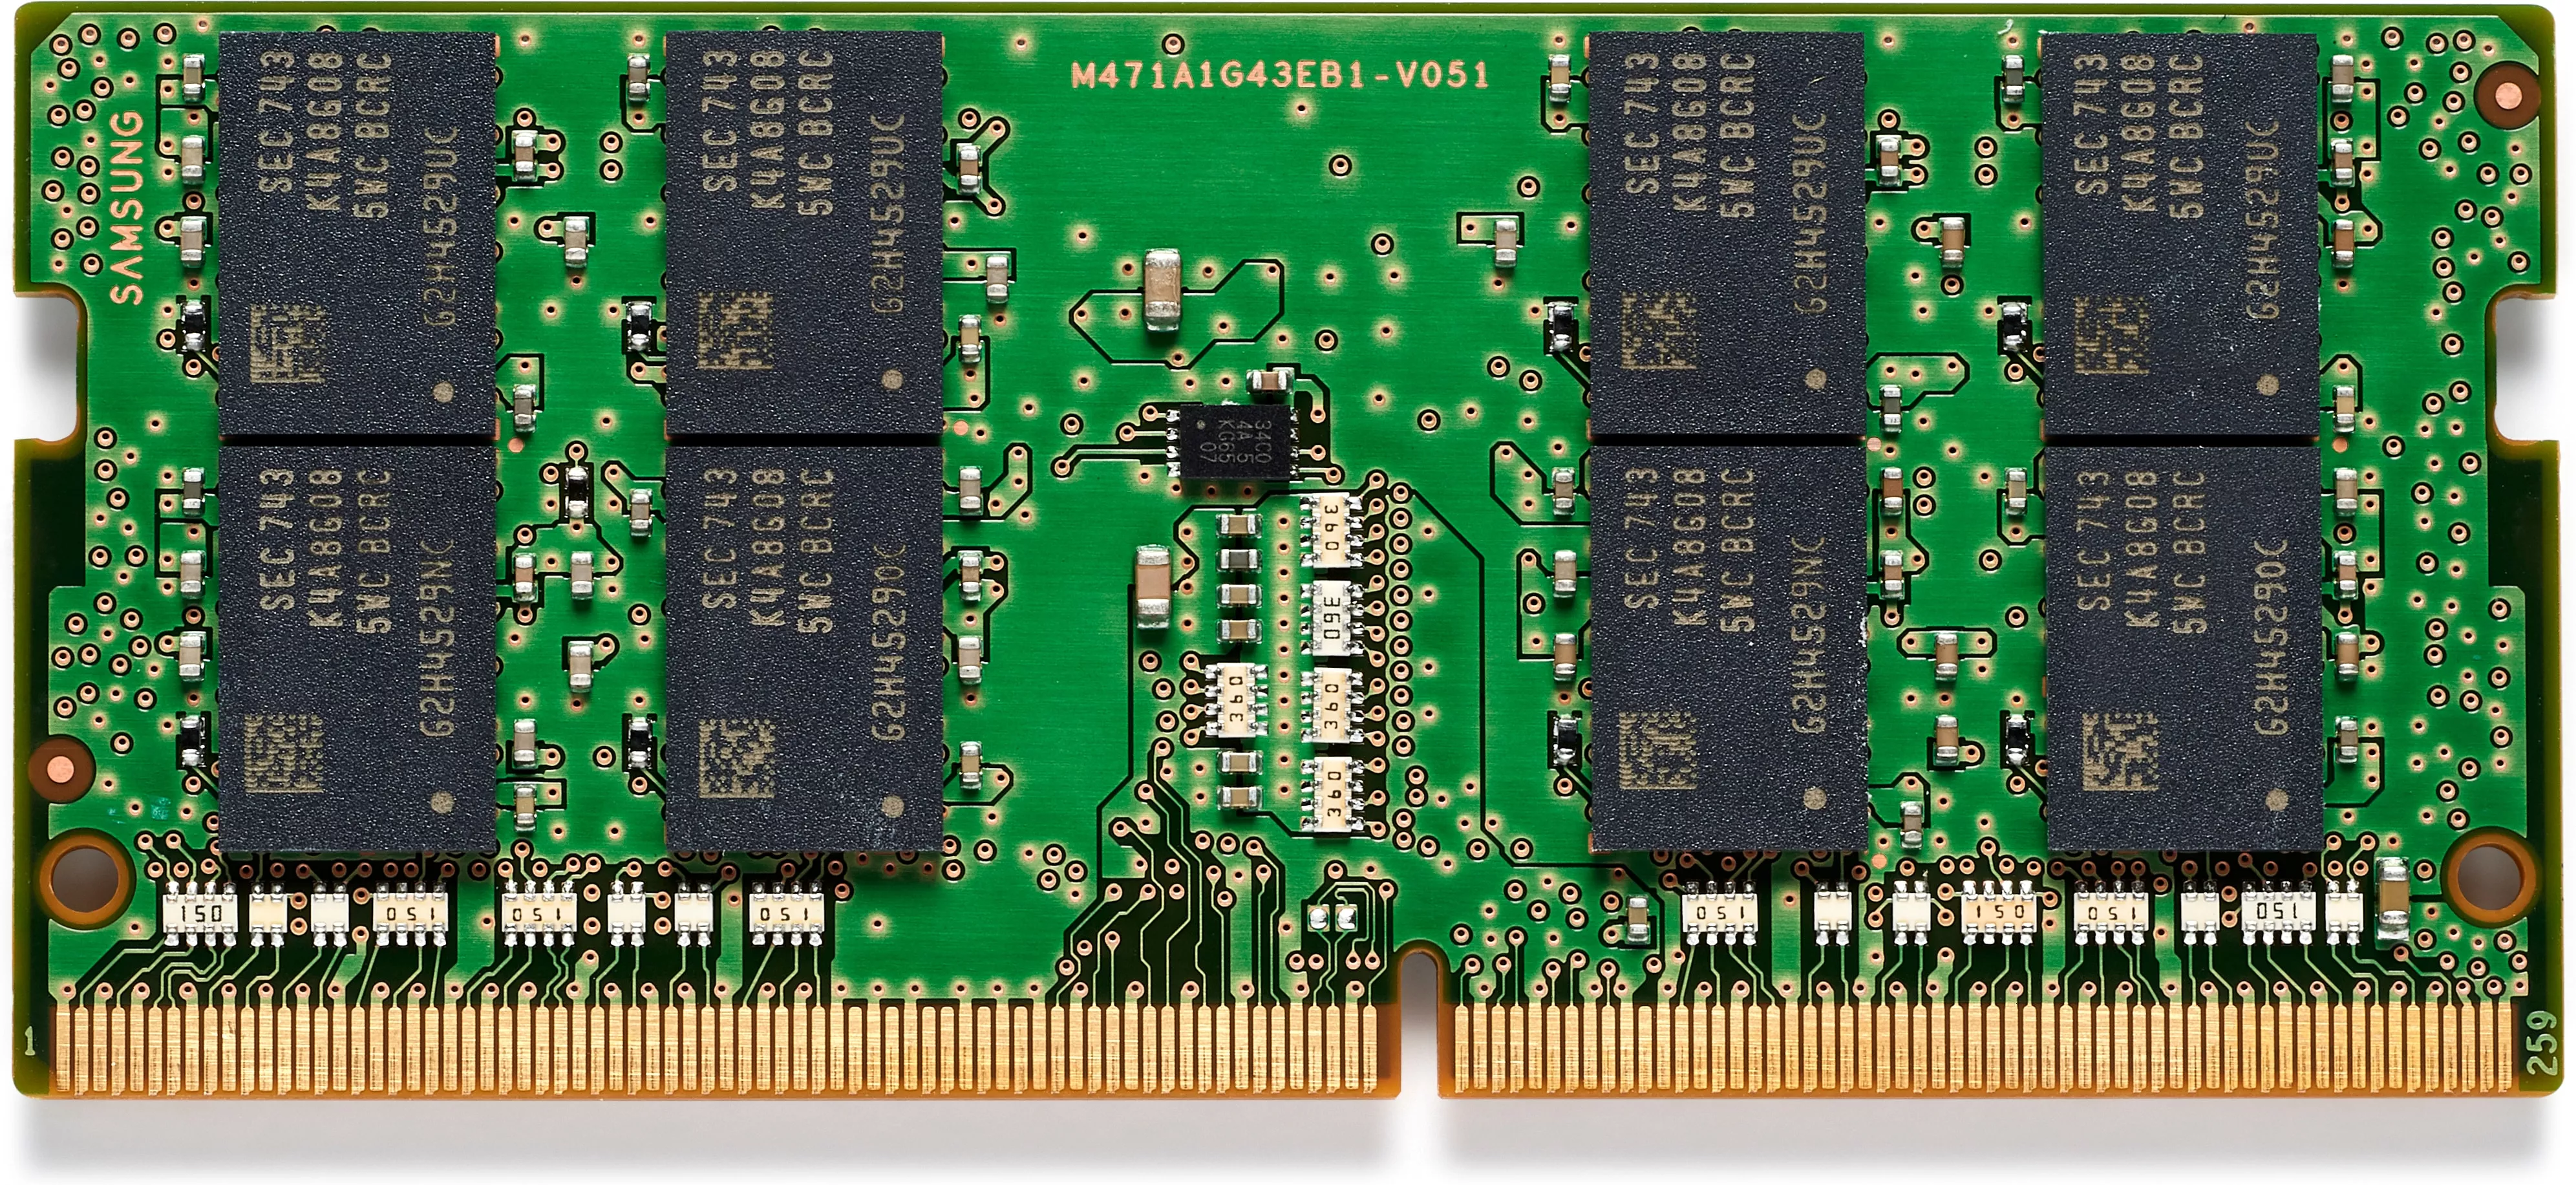 Achat HP 32GB DDR4 1x32GB 3200 SODIMM Memory -WW - 0196188246894